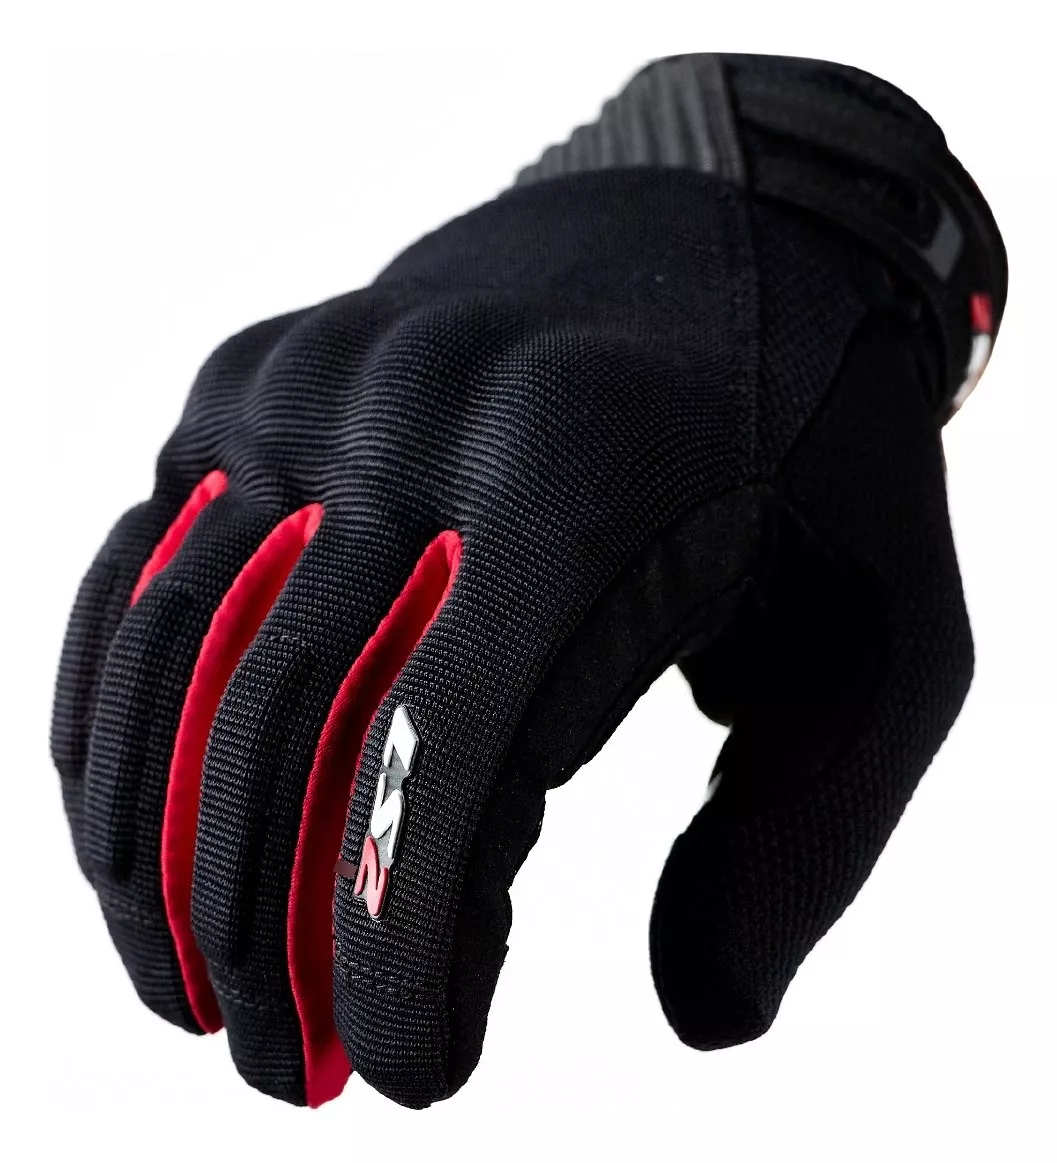 Tercera imagen para búsqueda de guantes moto proteccion